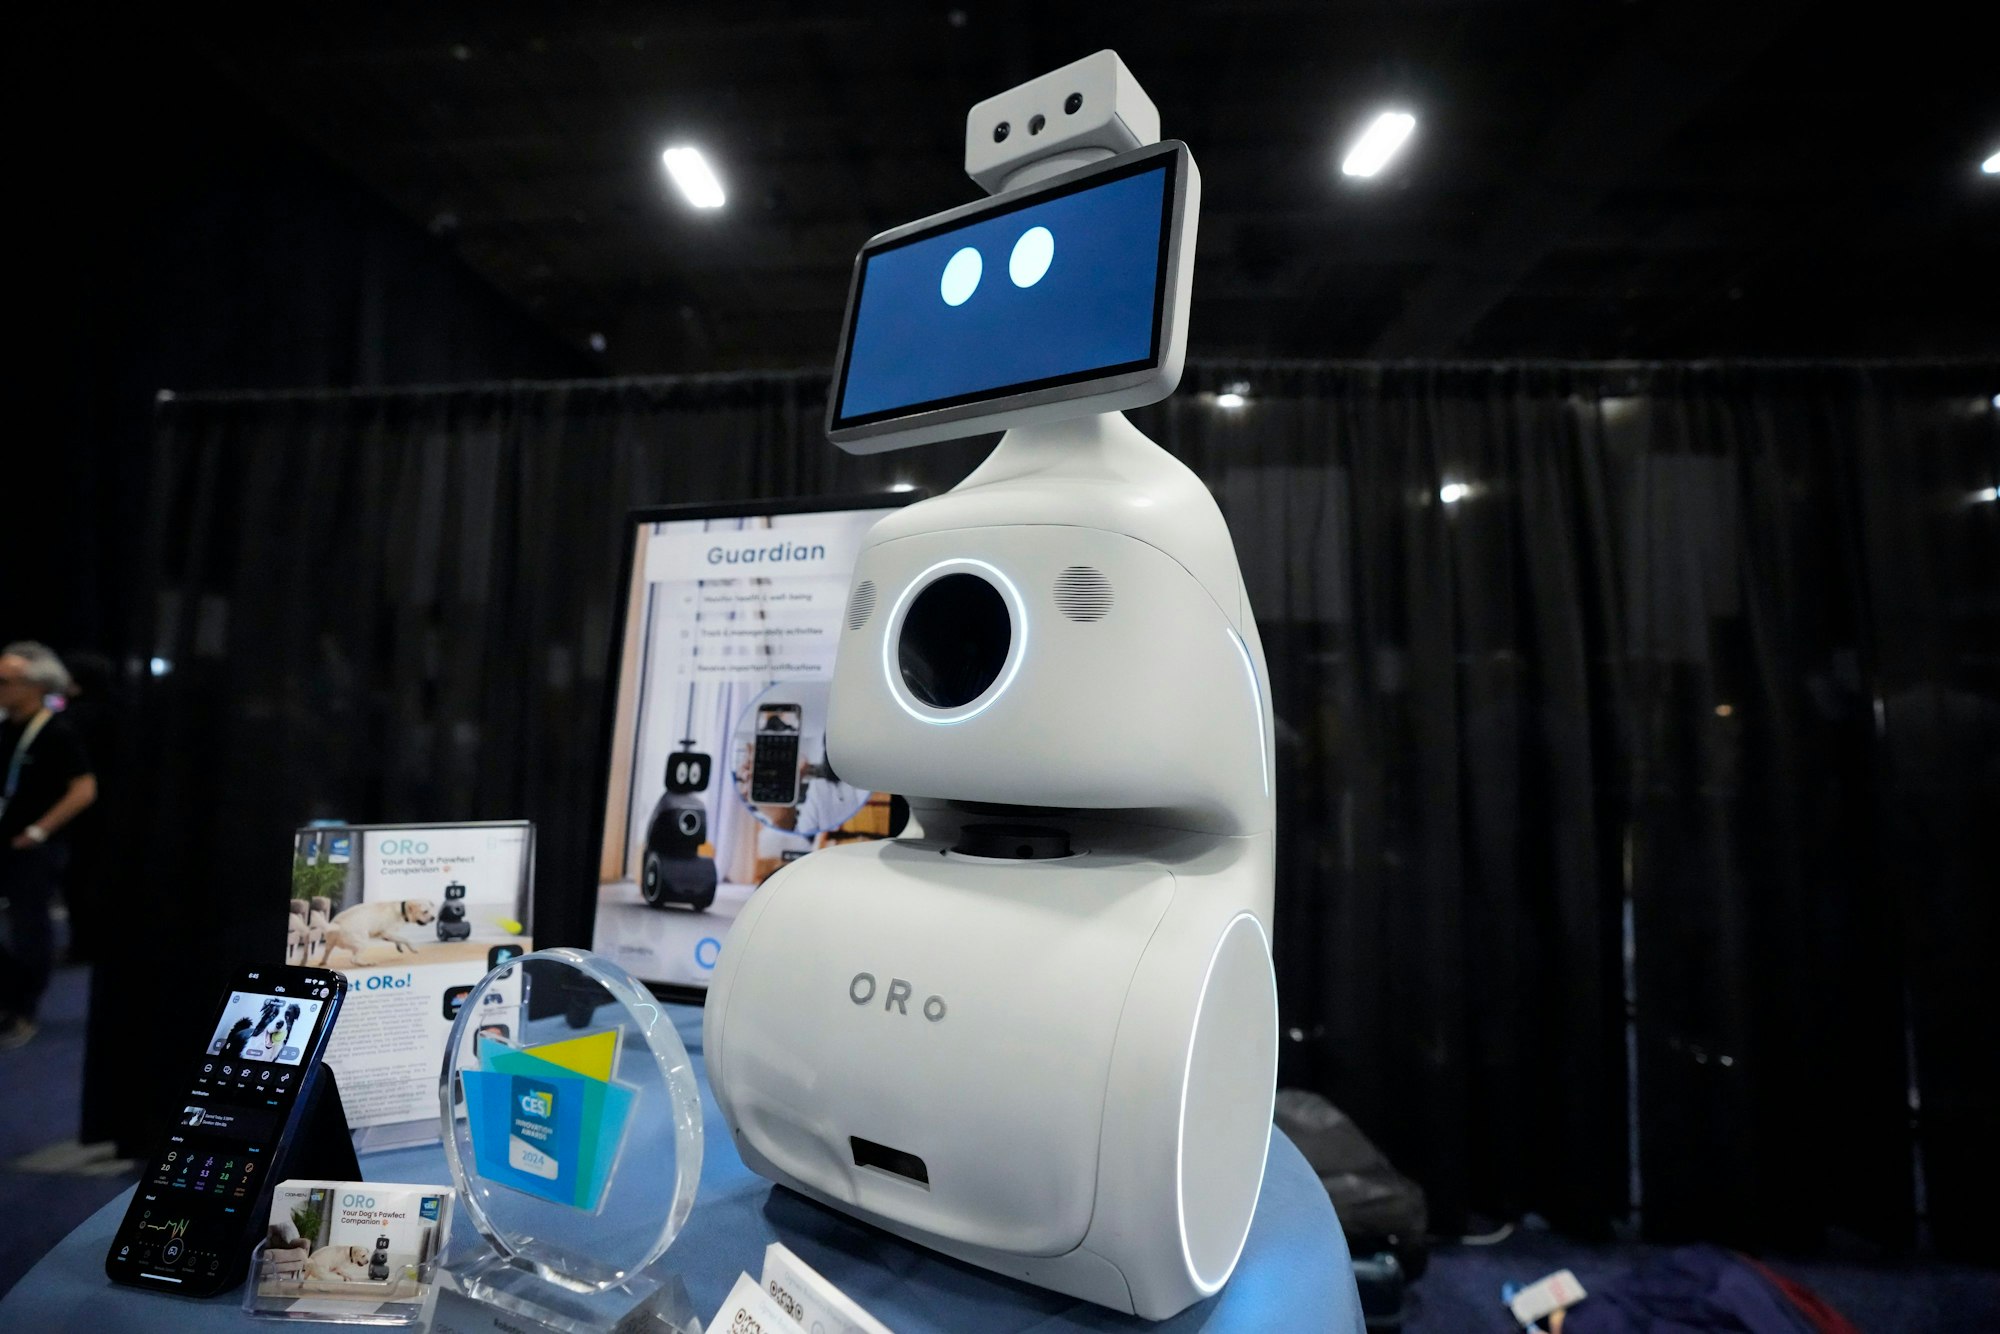 Der ORo-Roboter soll mit Haustieren interagieren, sie füttern und ihnen automatisch Medikamente verabreichen.